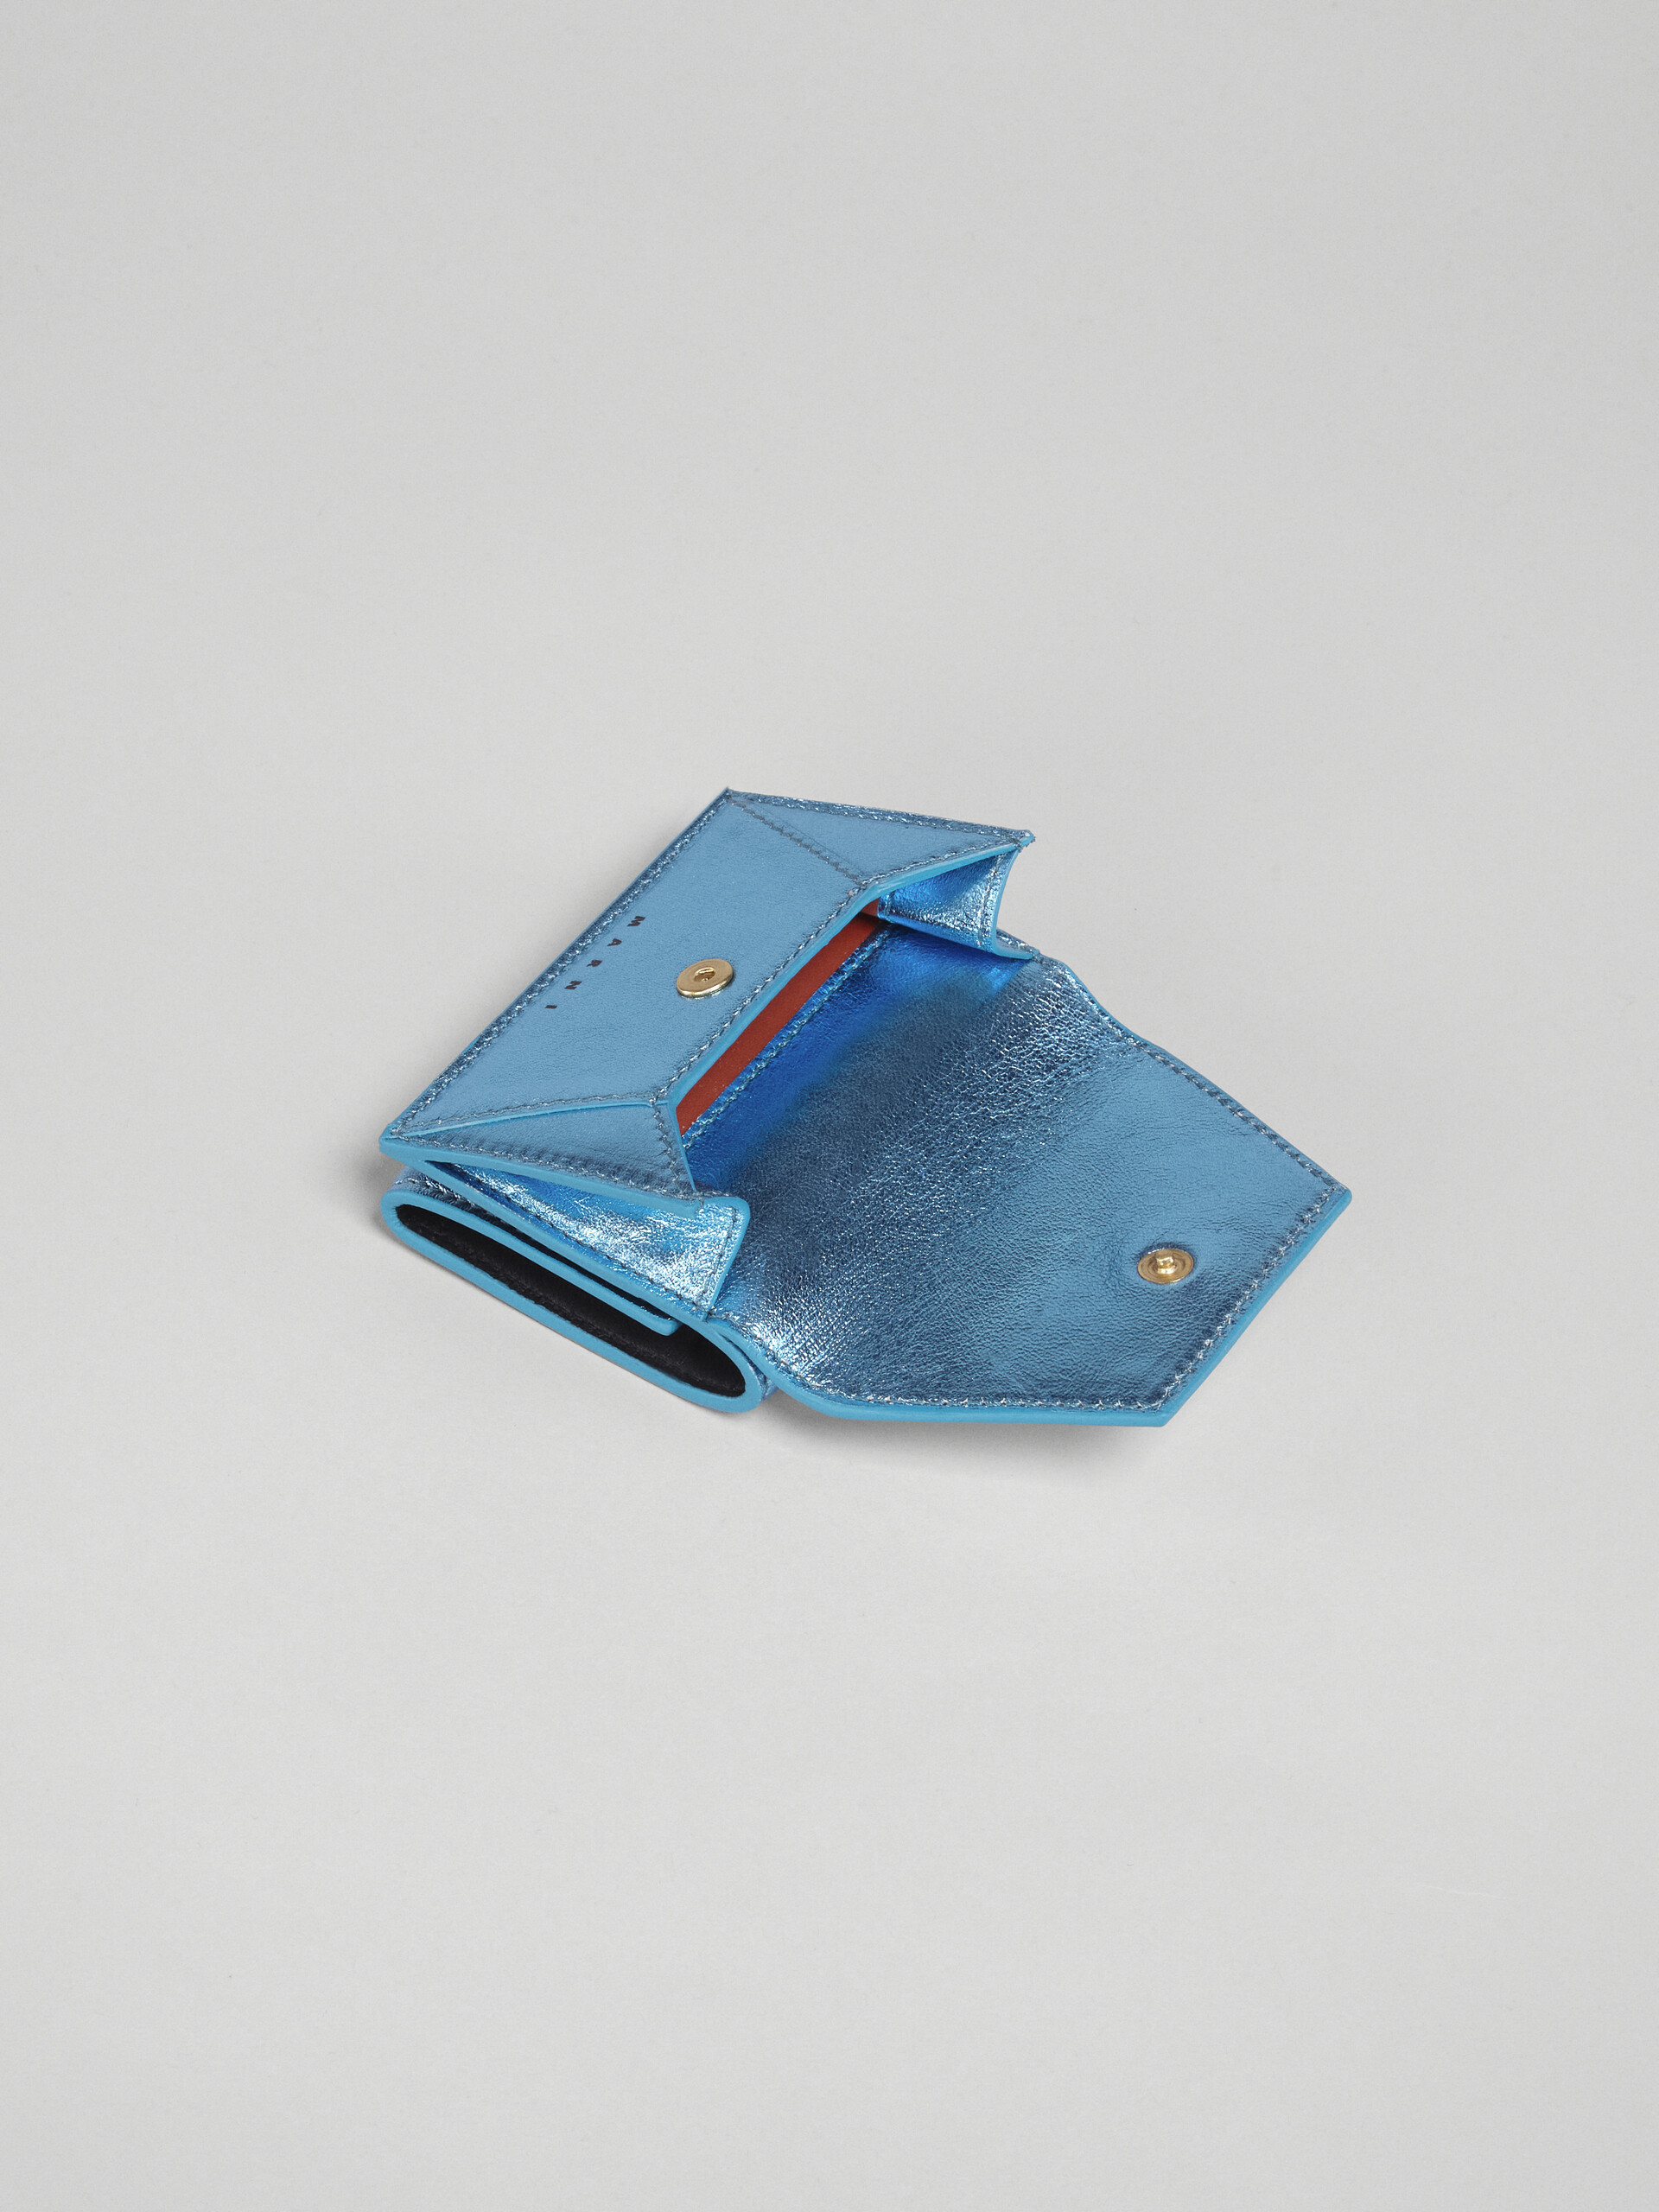 Portafoglio tri-fold in nappa metallizzata azzurro - Portafogli - Image 5